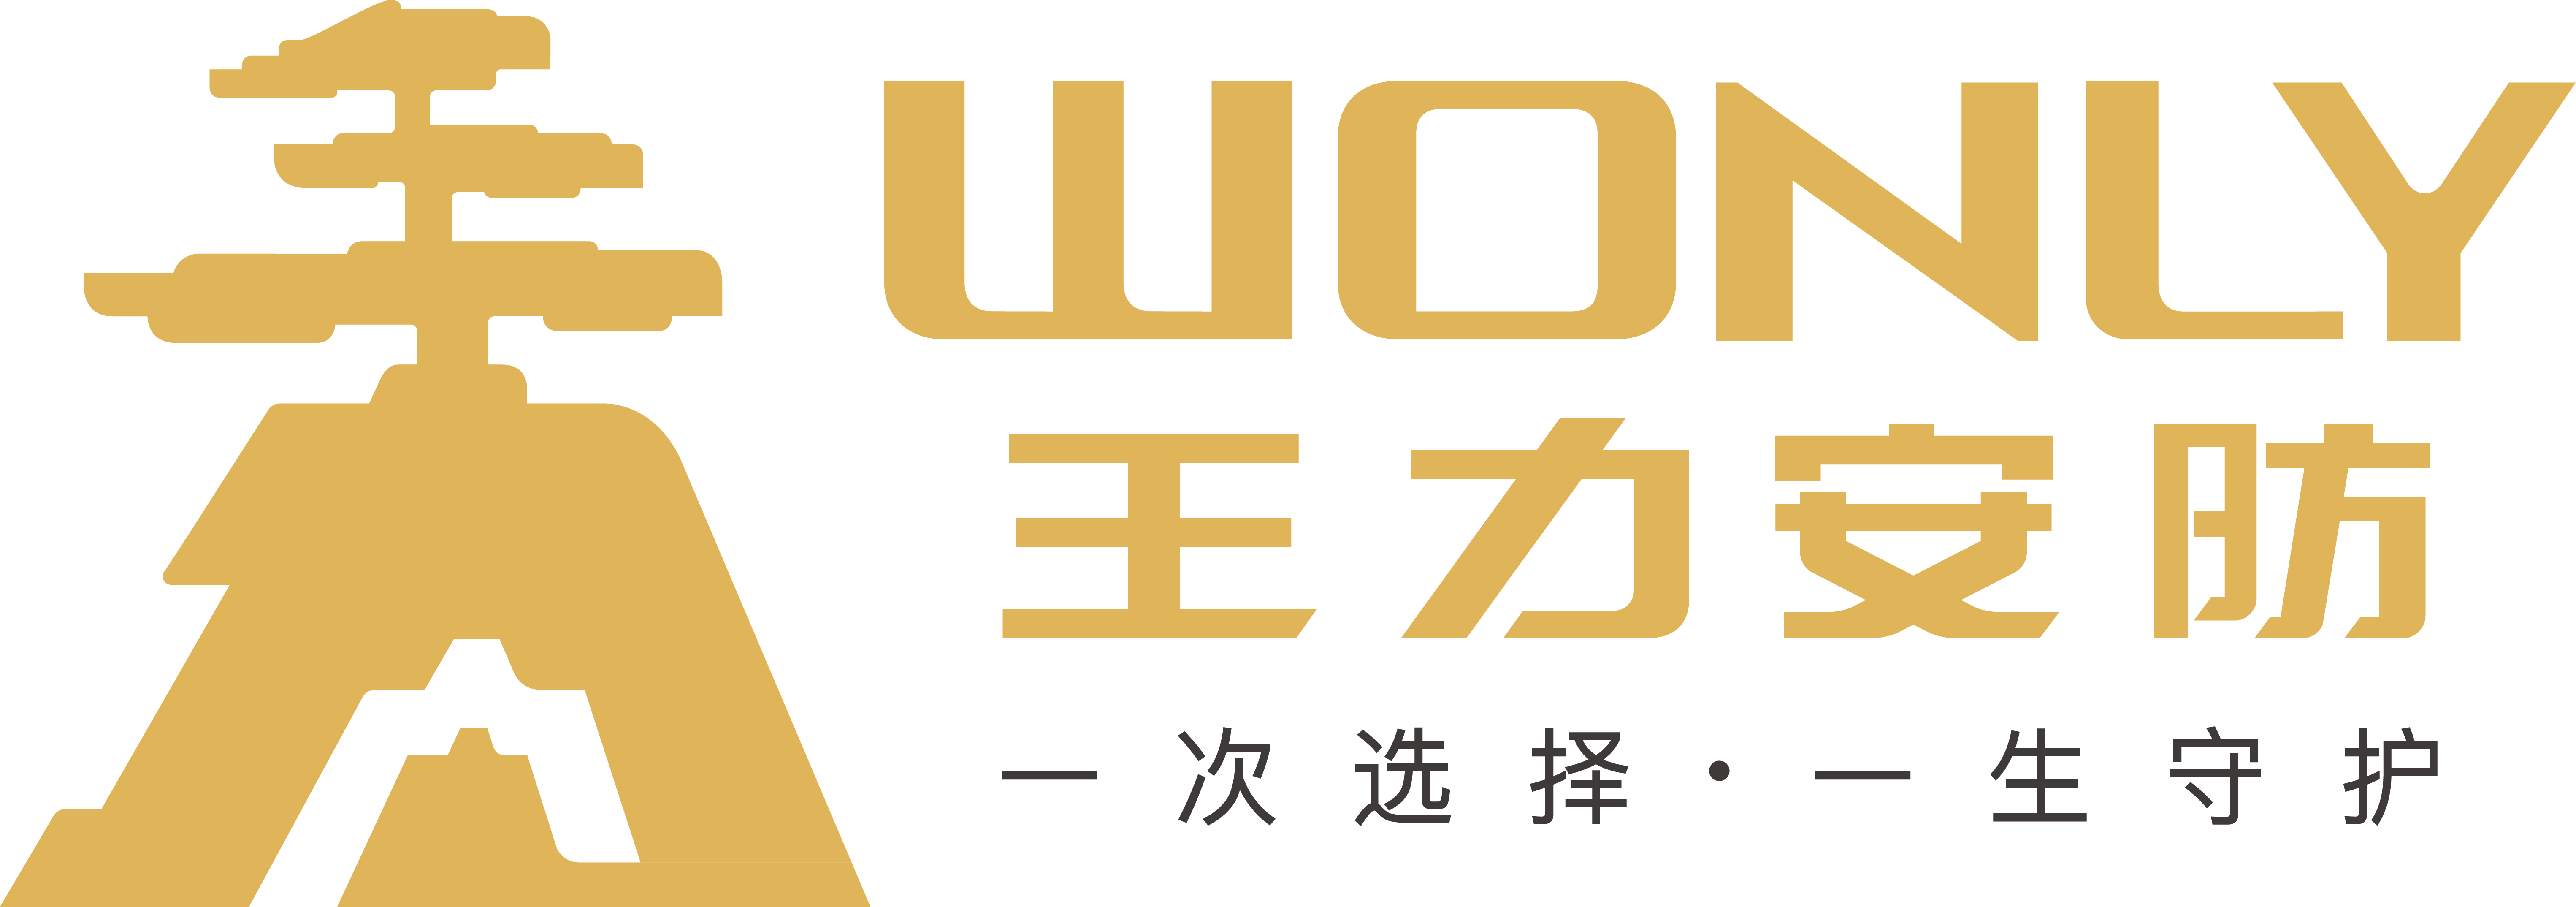 王力安全门logo图片